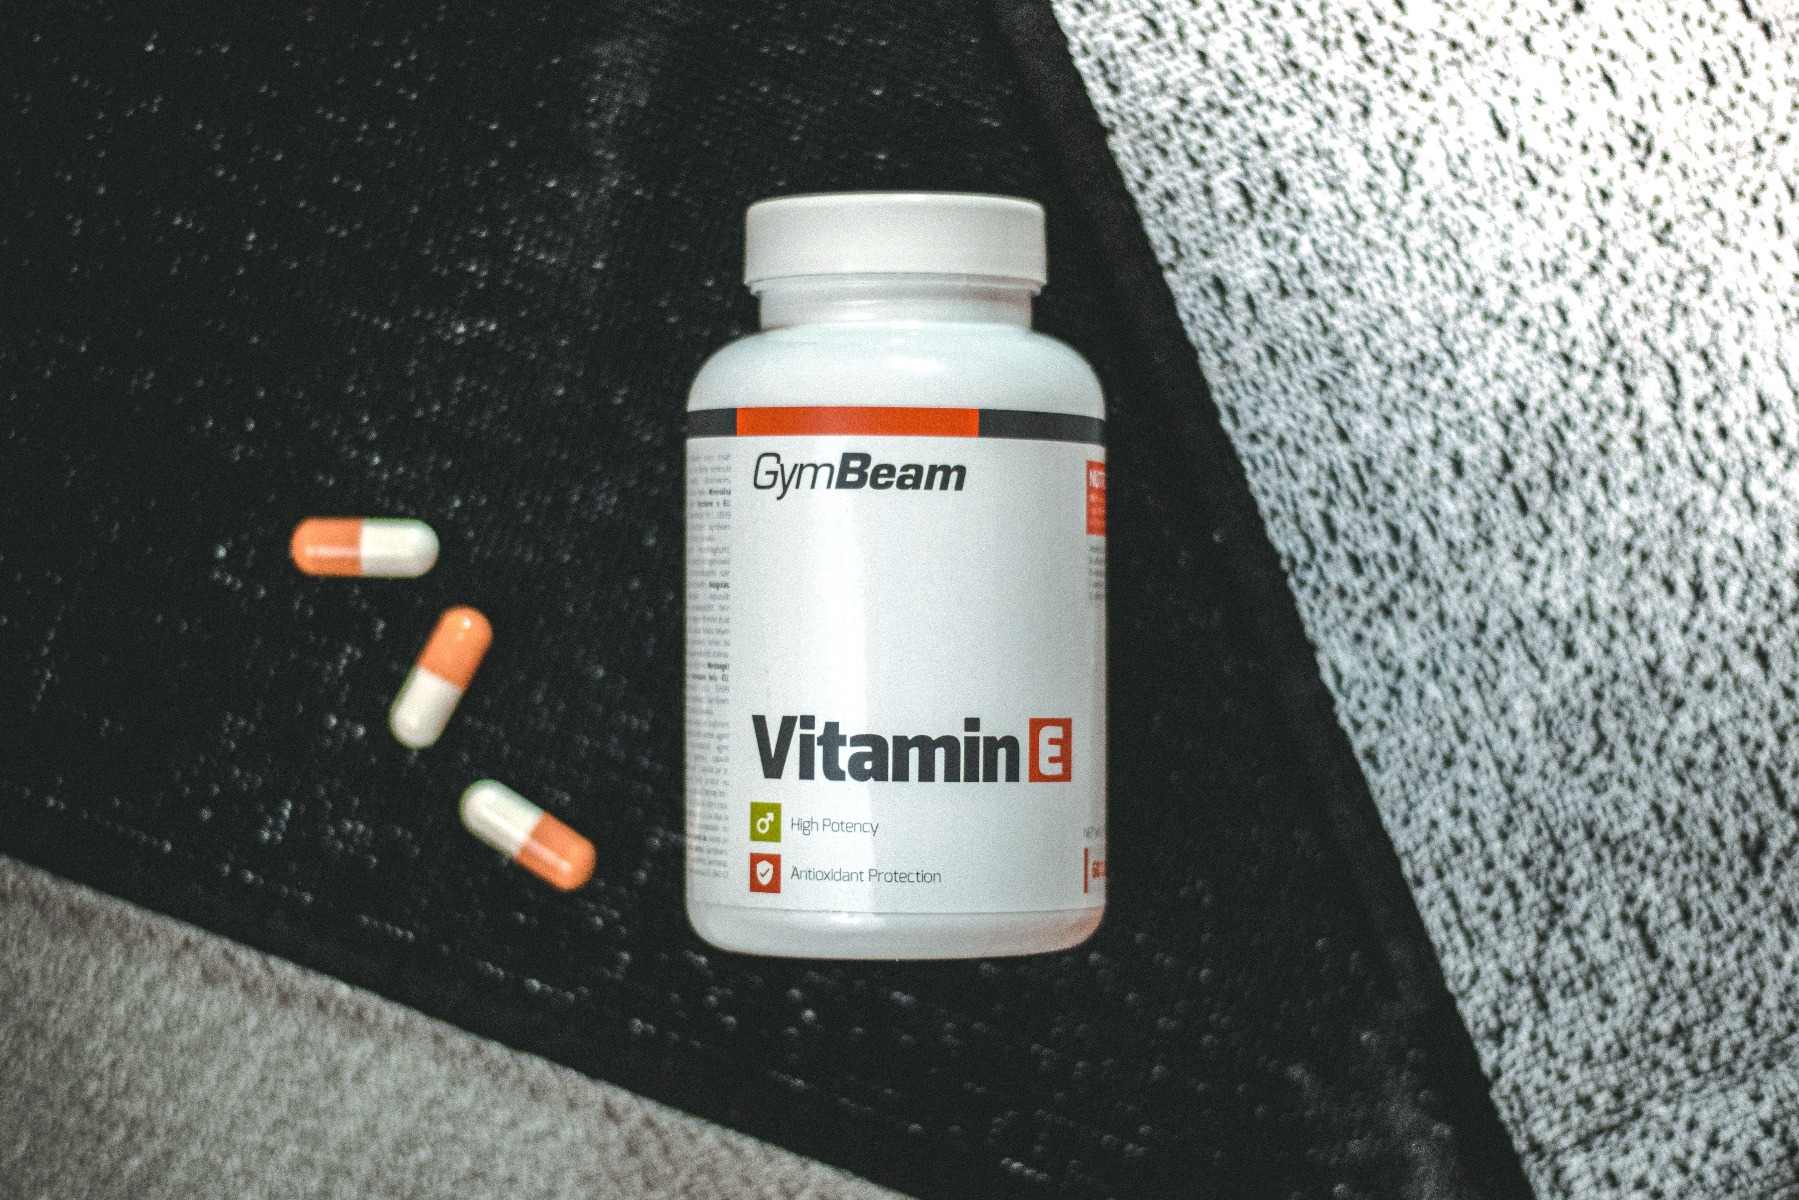 E-vitamin (tokoferol) 60 kapsz - GymBeam